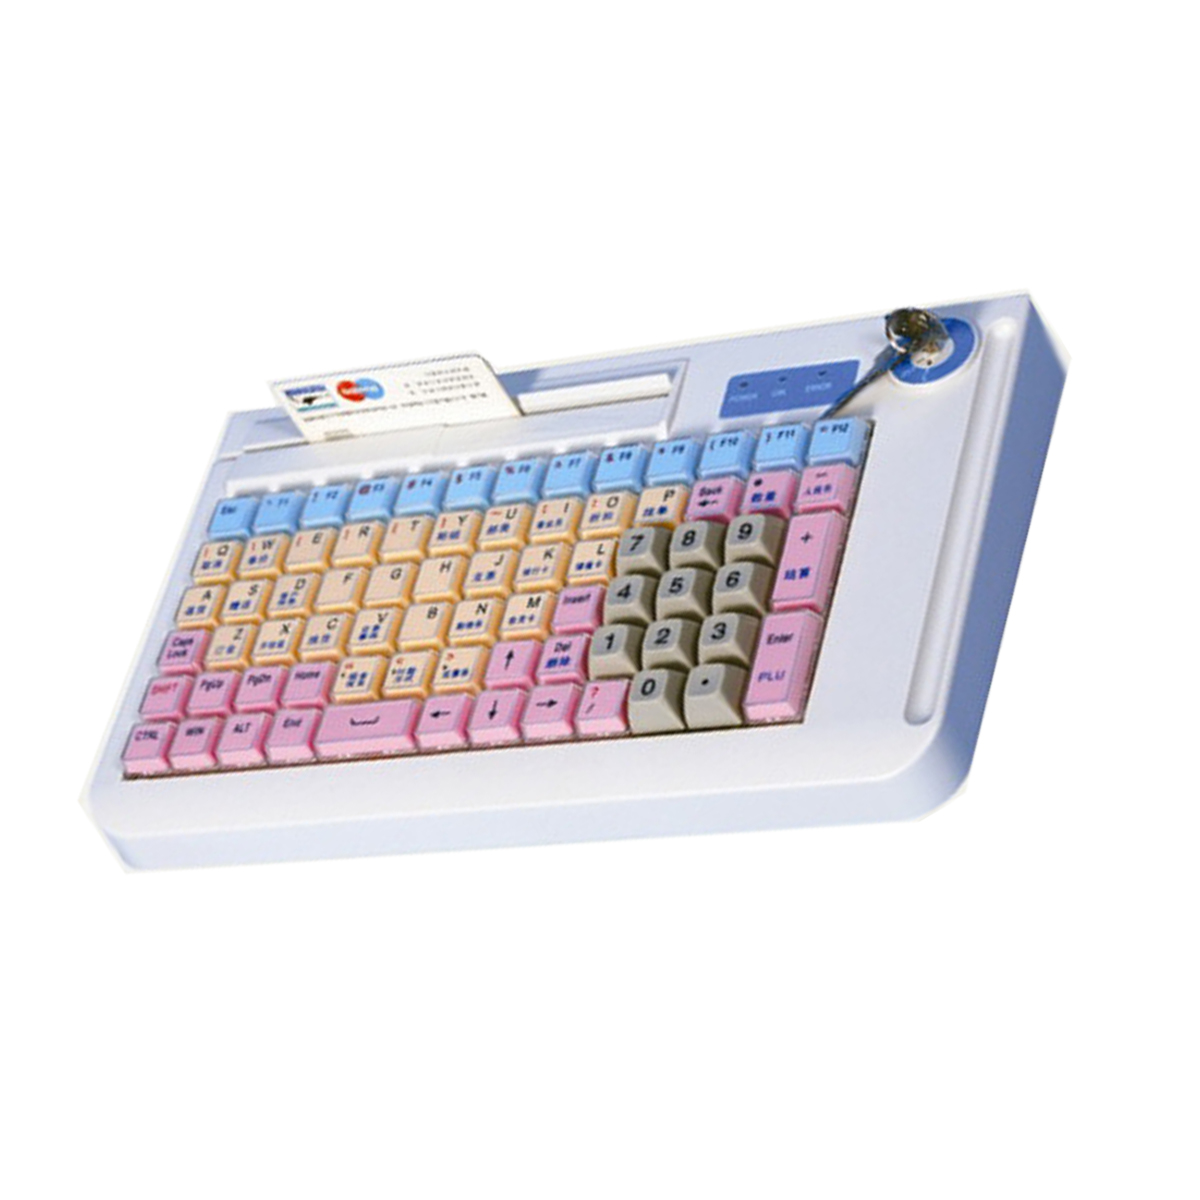 programmable keyboard HS-kp078